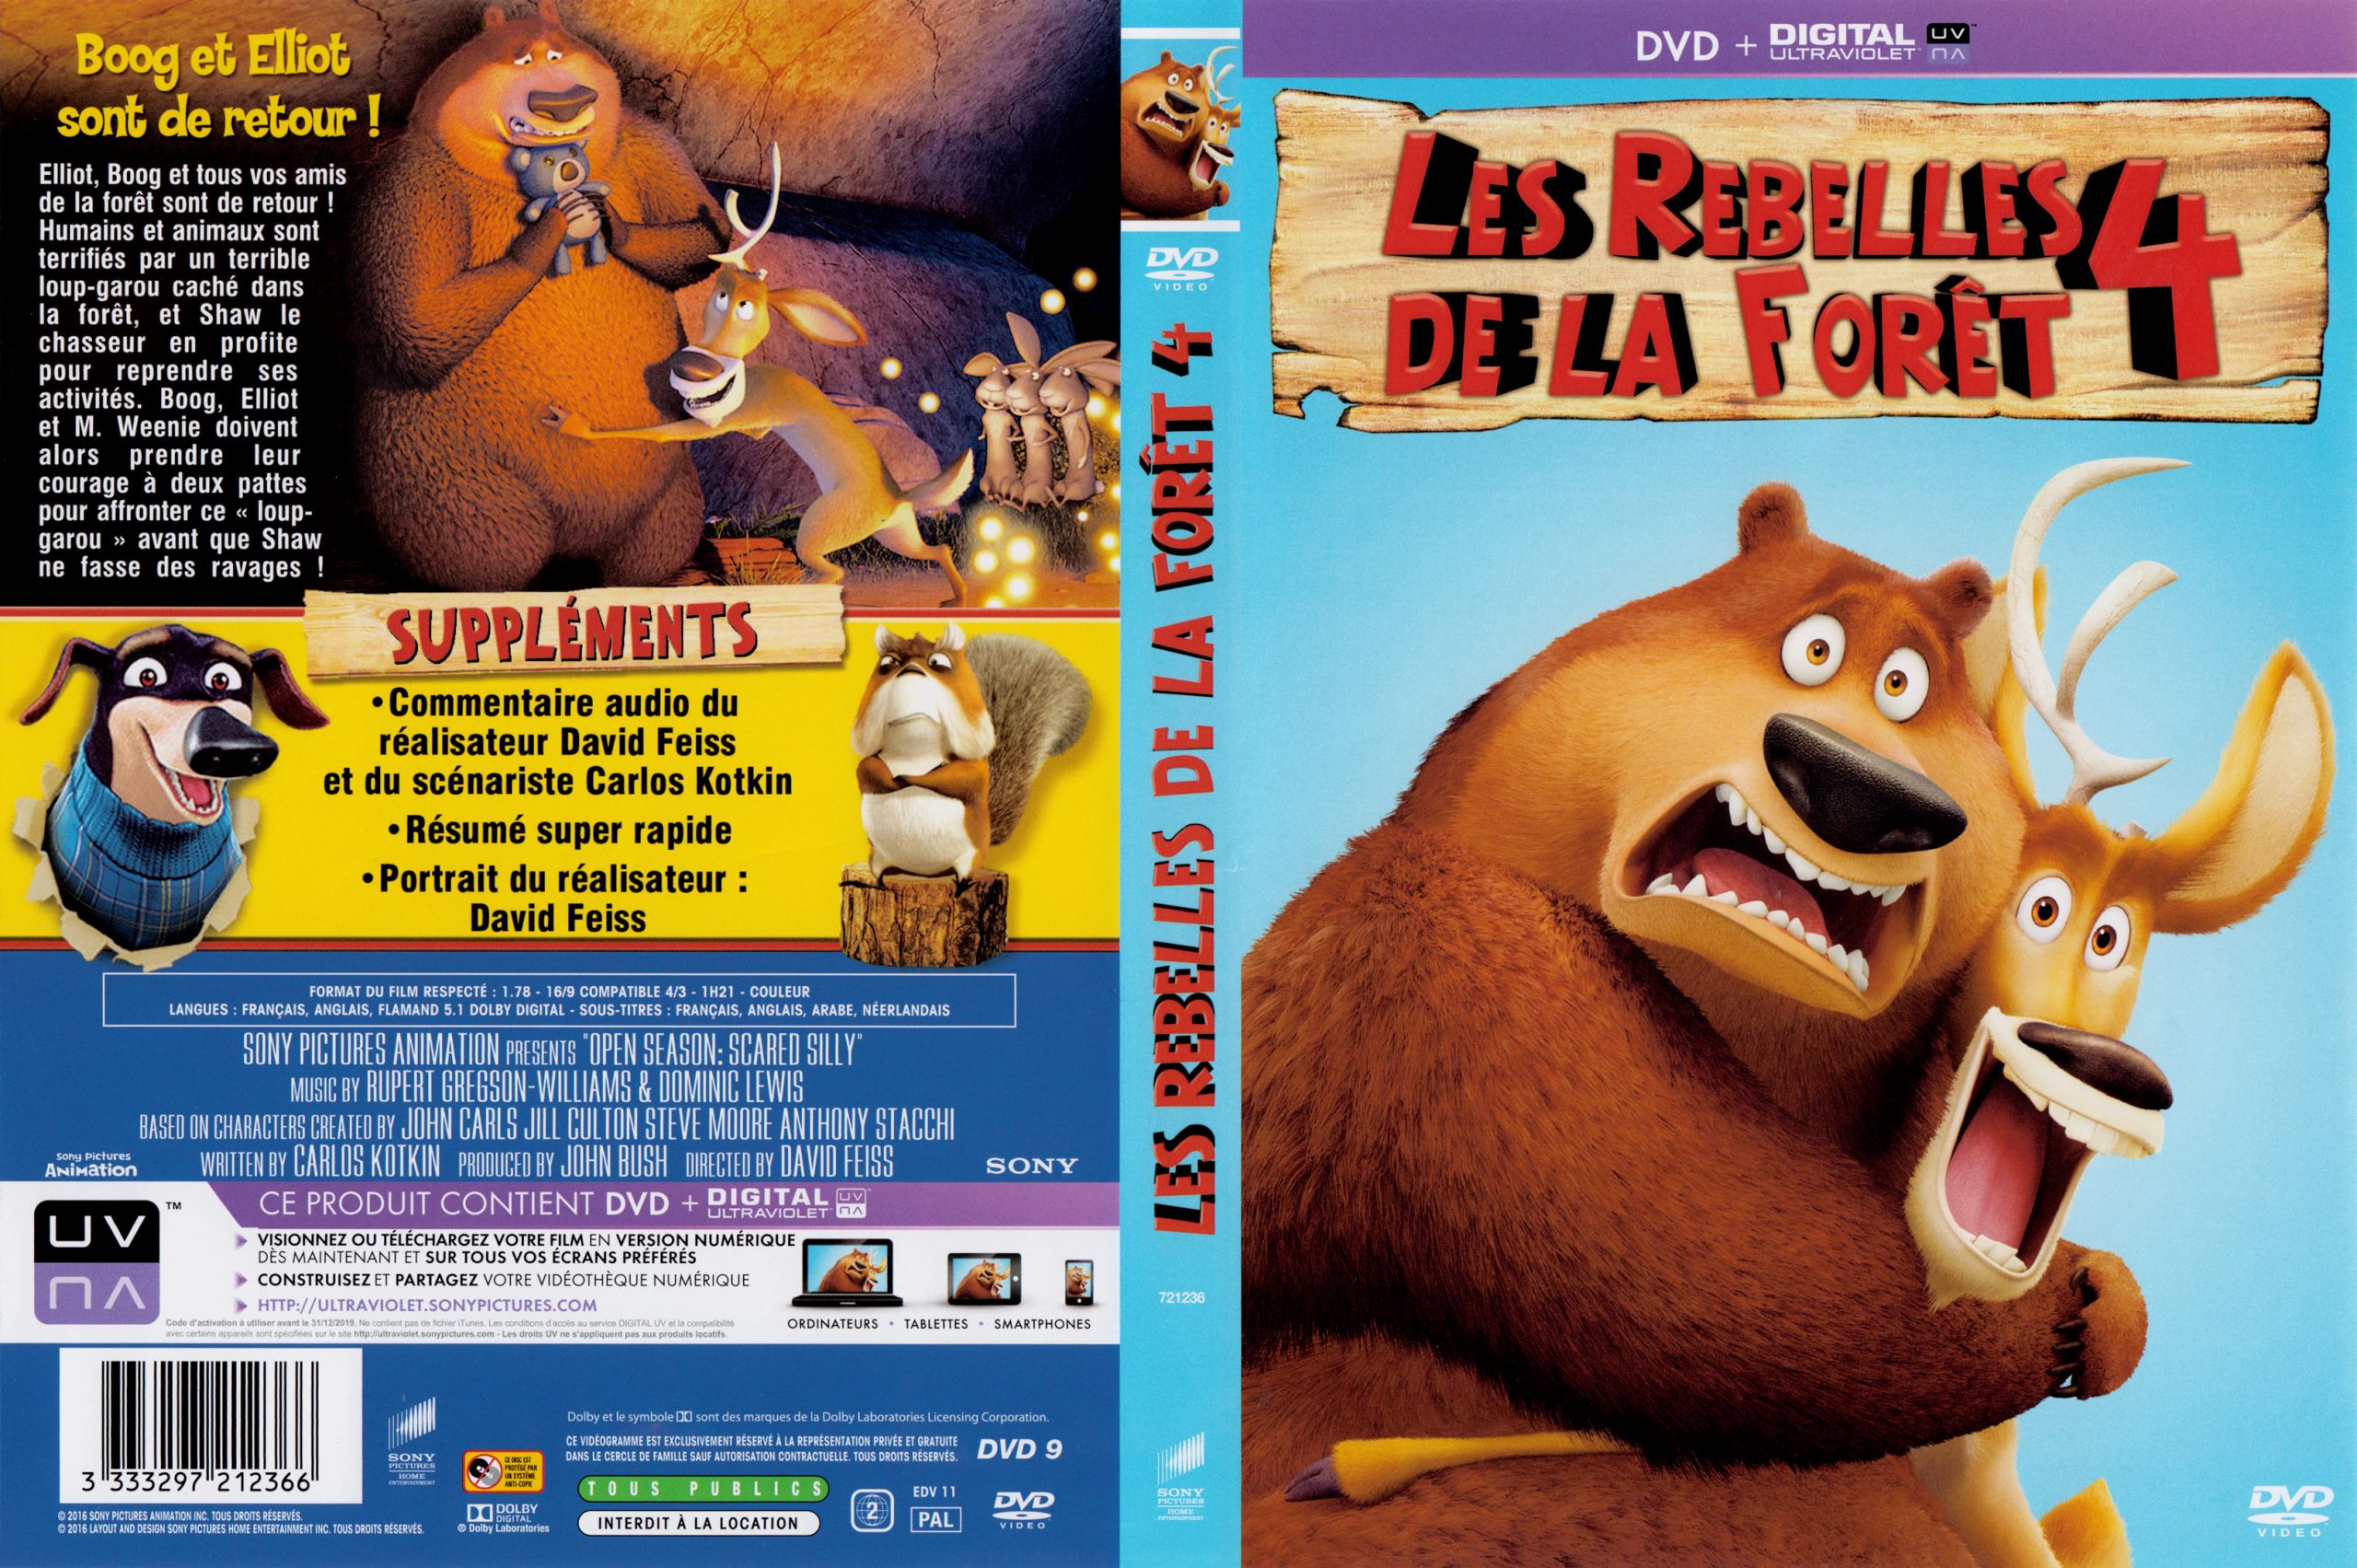 Jaquette Dvd De Les Rebelles De La Foret 4 - Cinéma Passion concernant Les Rebelles De La Foret 